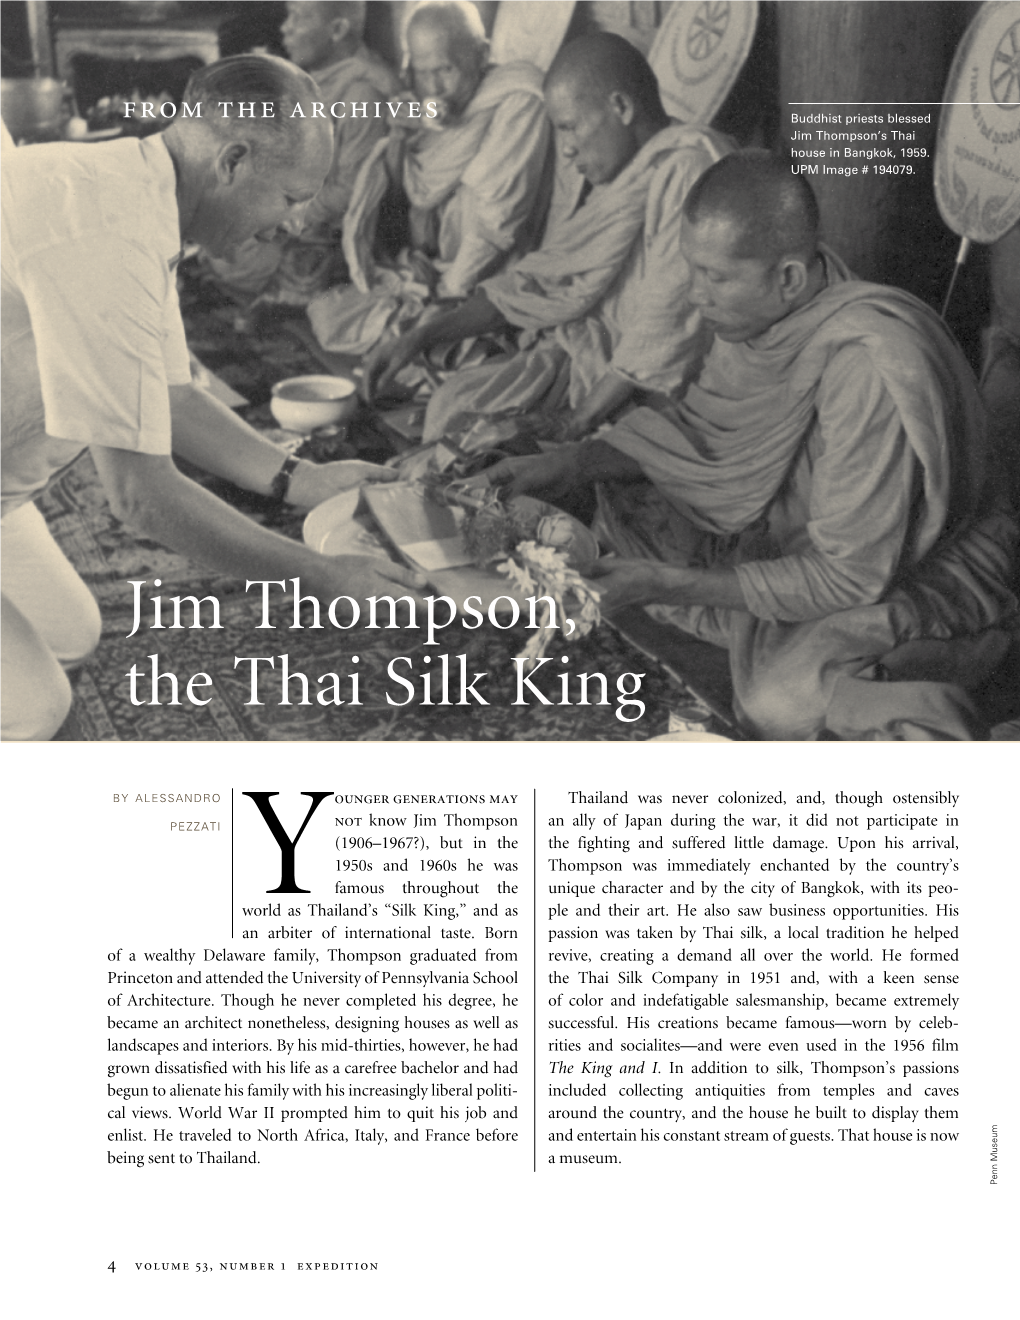 Jim Thompson, the Thai Silk King